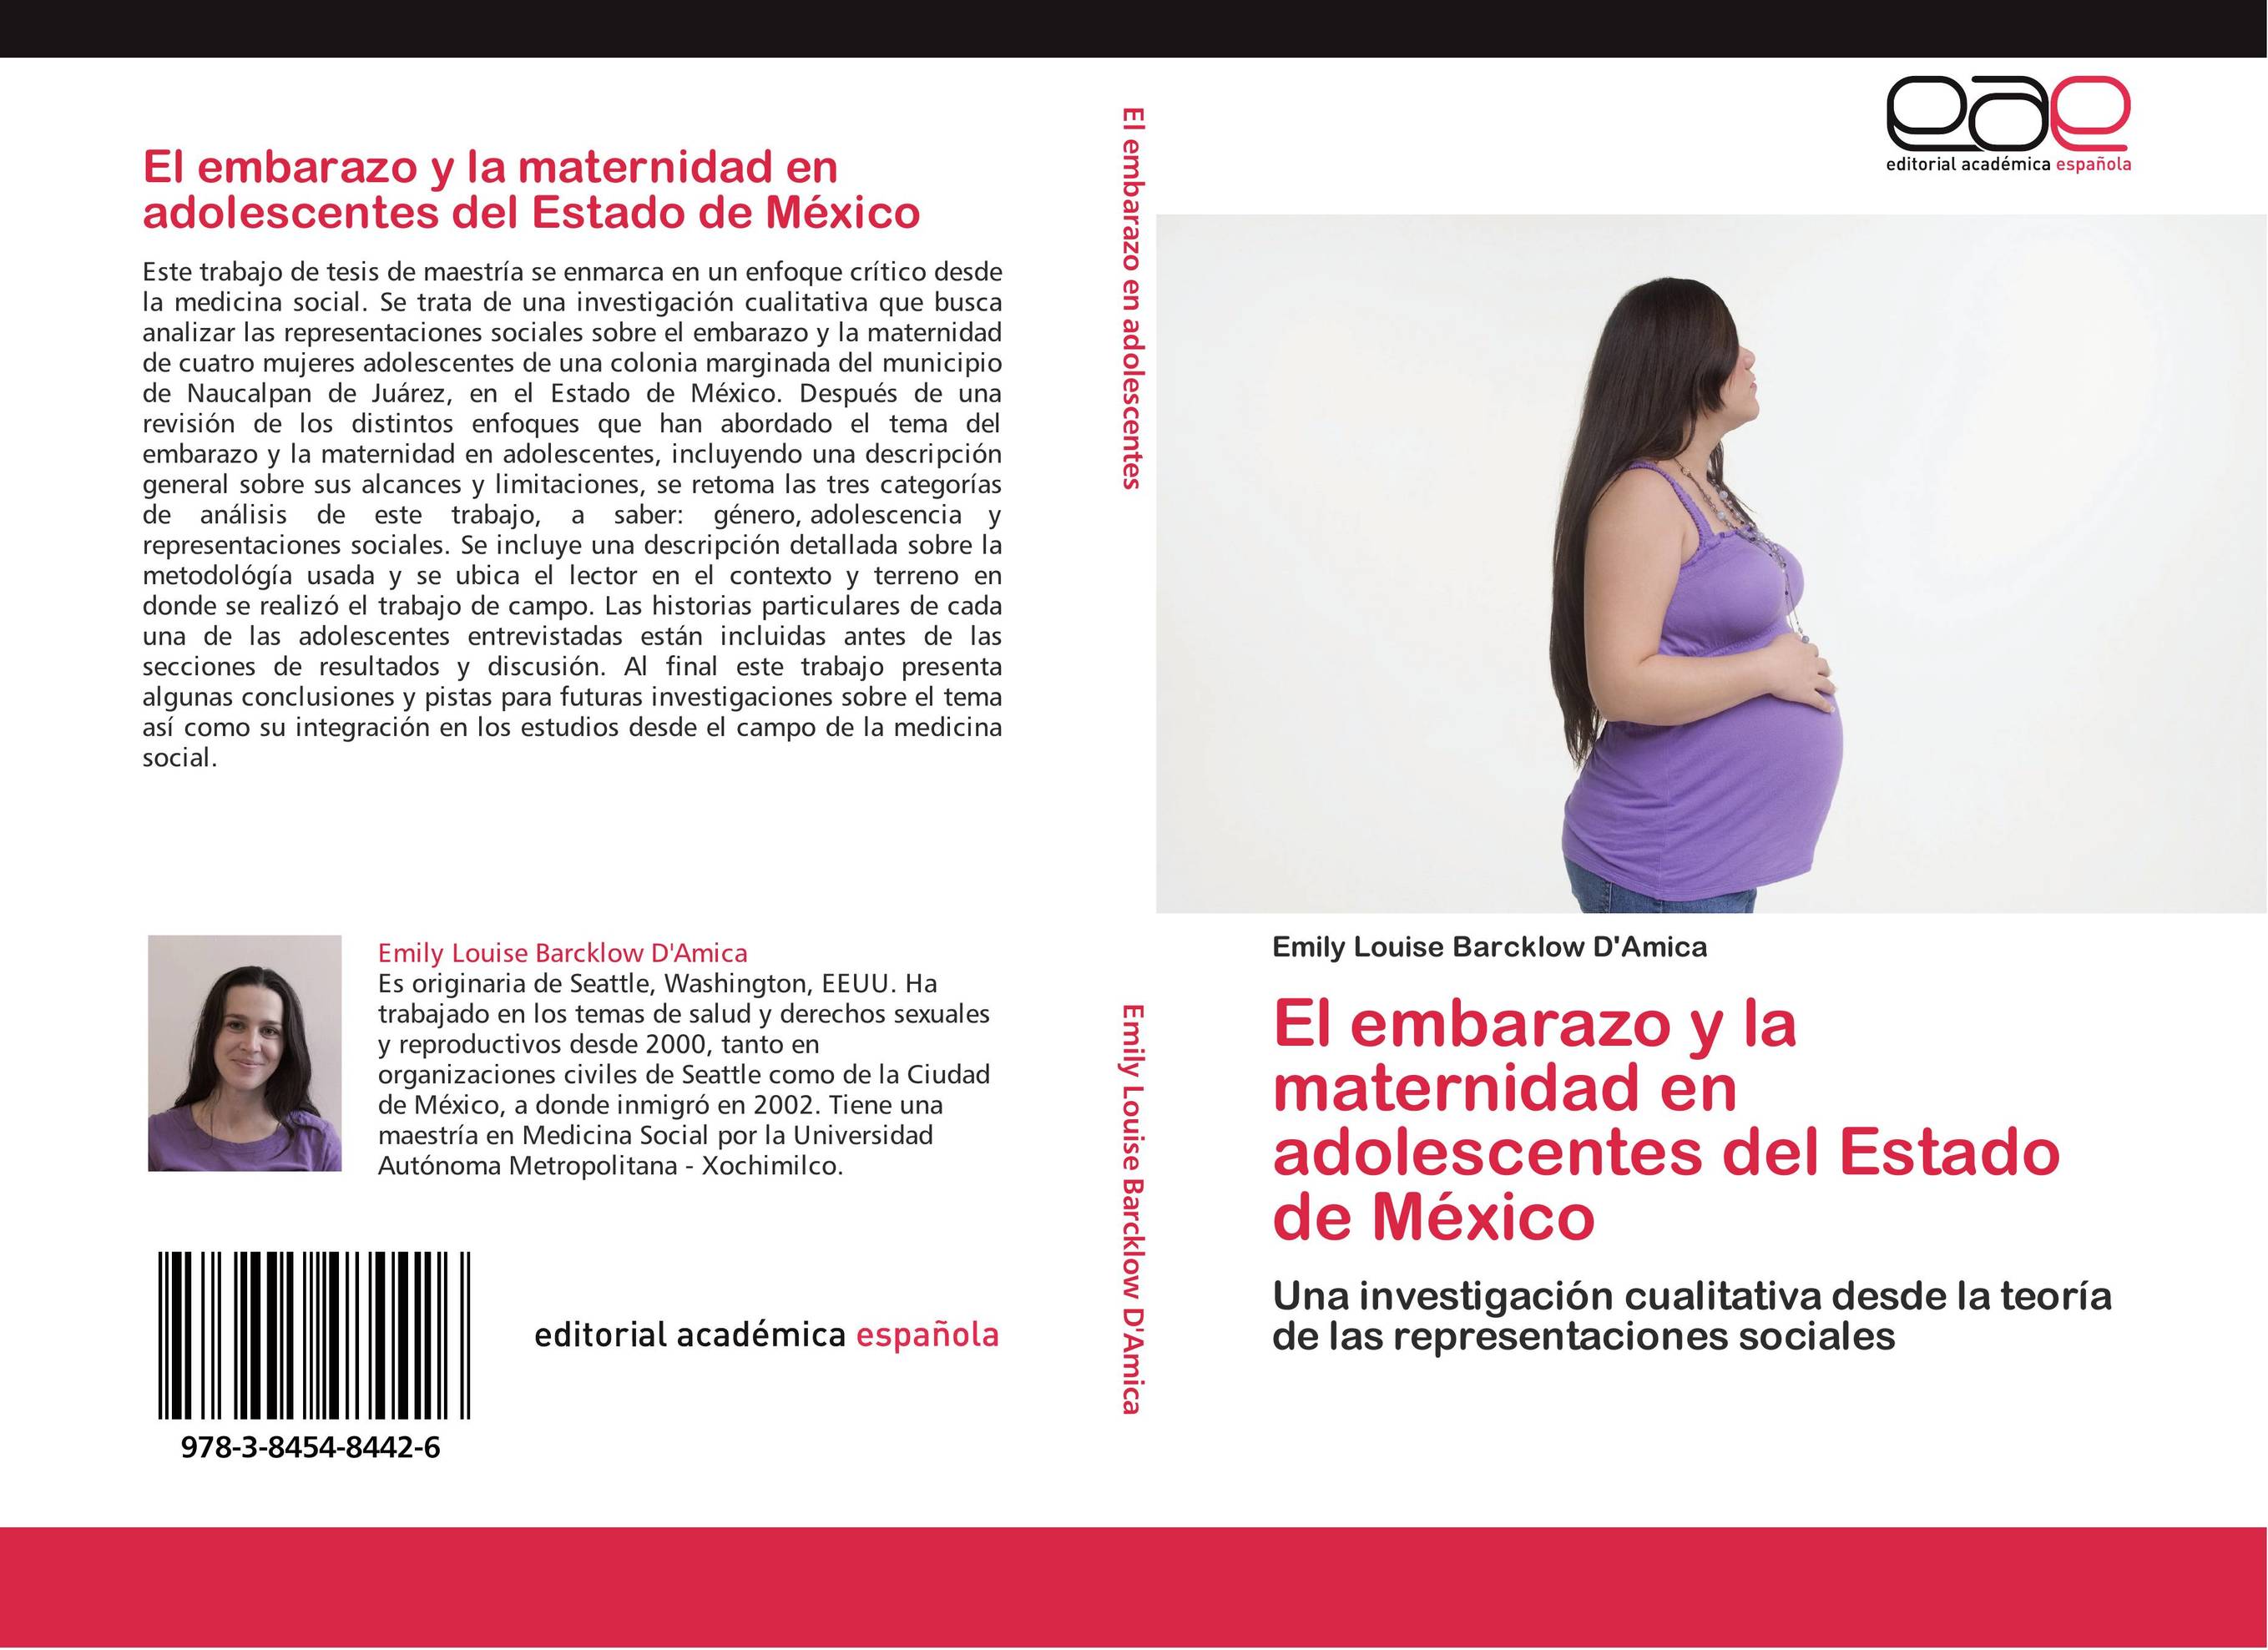 El embarazo y la maternidad en adolescentes del Estado de México